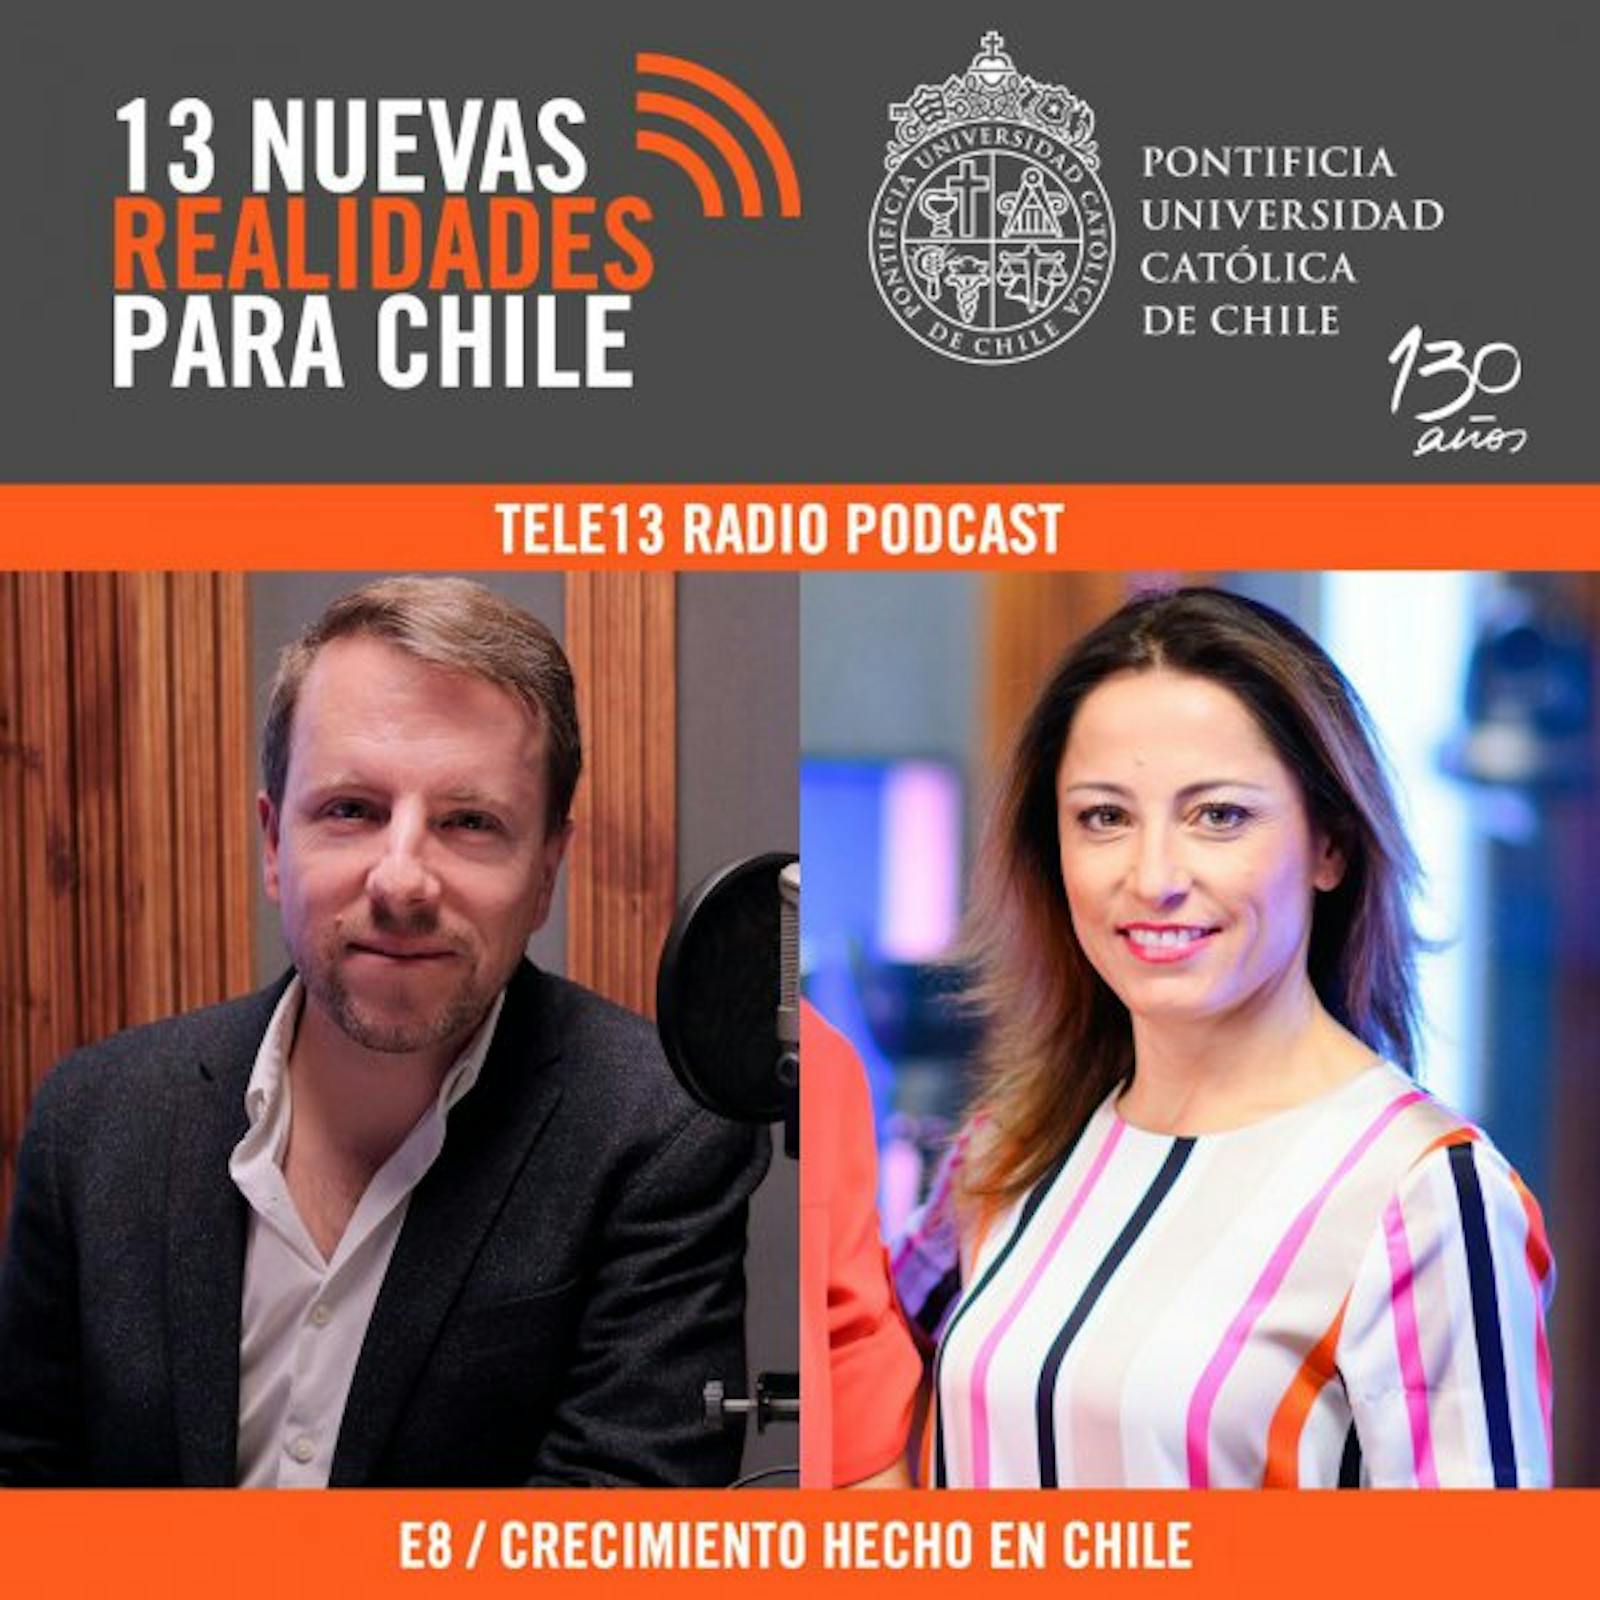 E8 Michael Leatherbee y el "Crecimiento hecho en Chile"